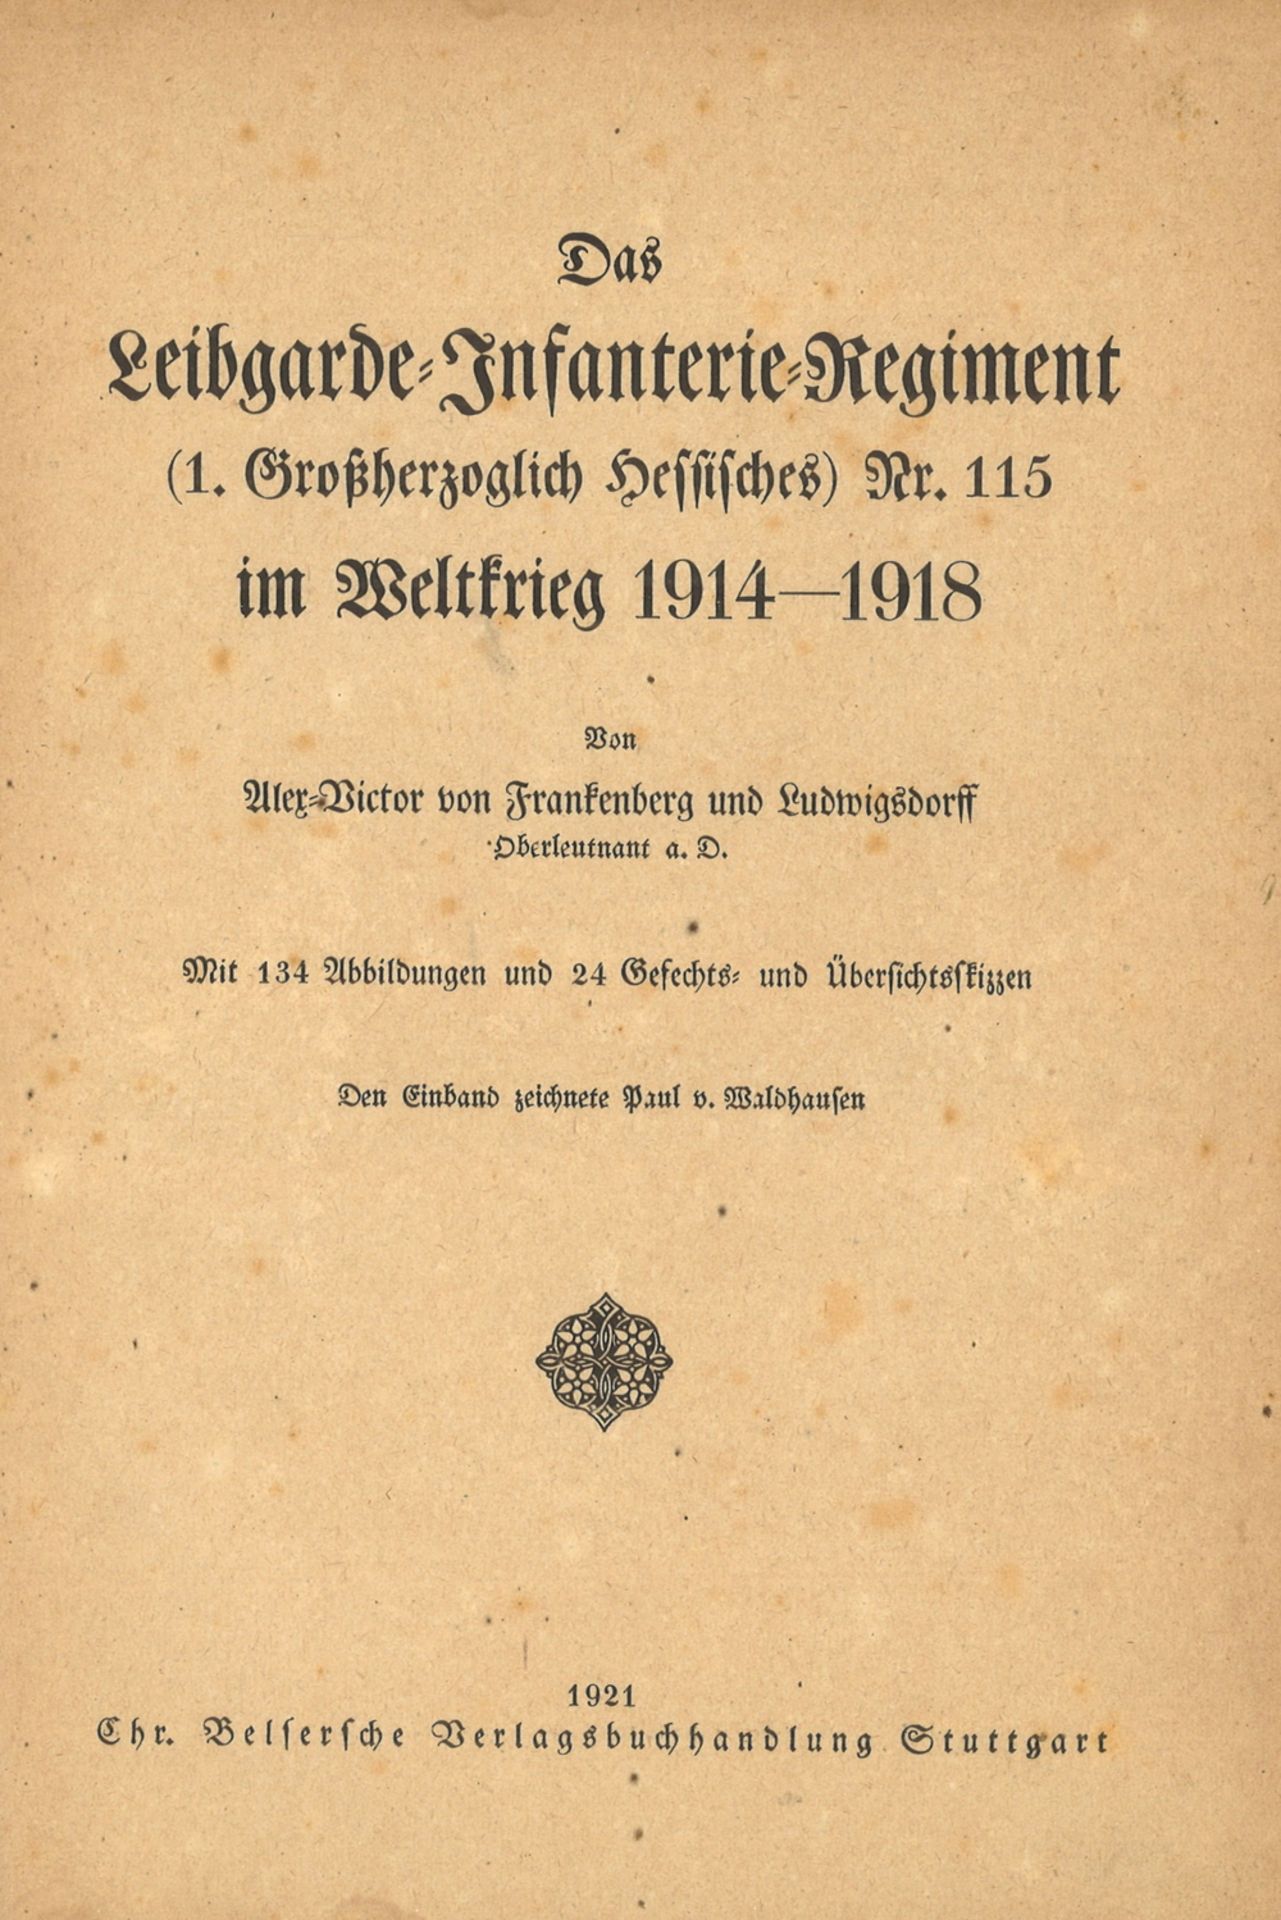 Das Leibgarde - Infanterie - Regiment im Weltkriege 1914-1918. Alex - Victor von Frankenberg und - Image 2 of 2